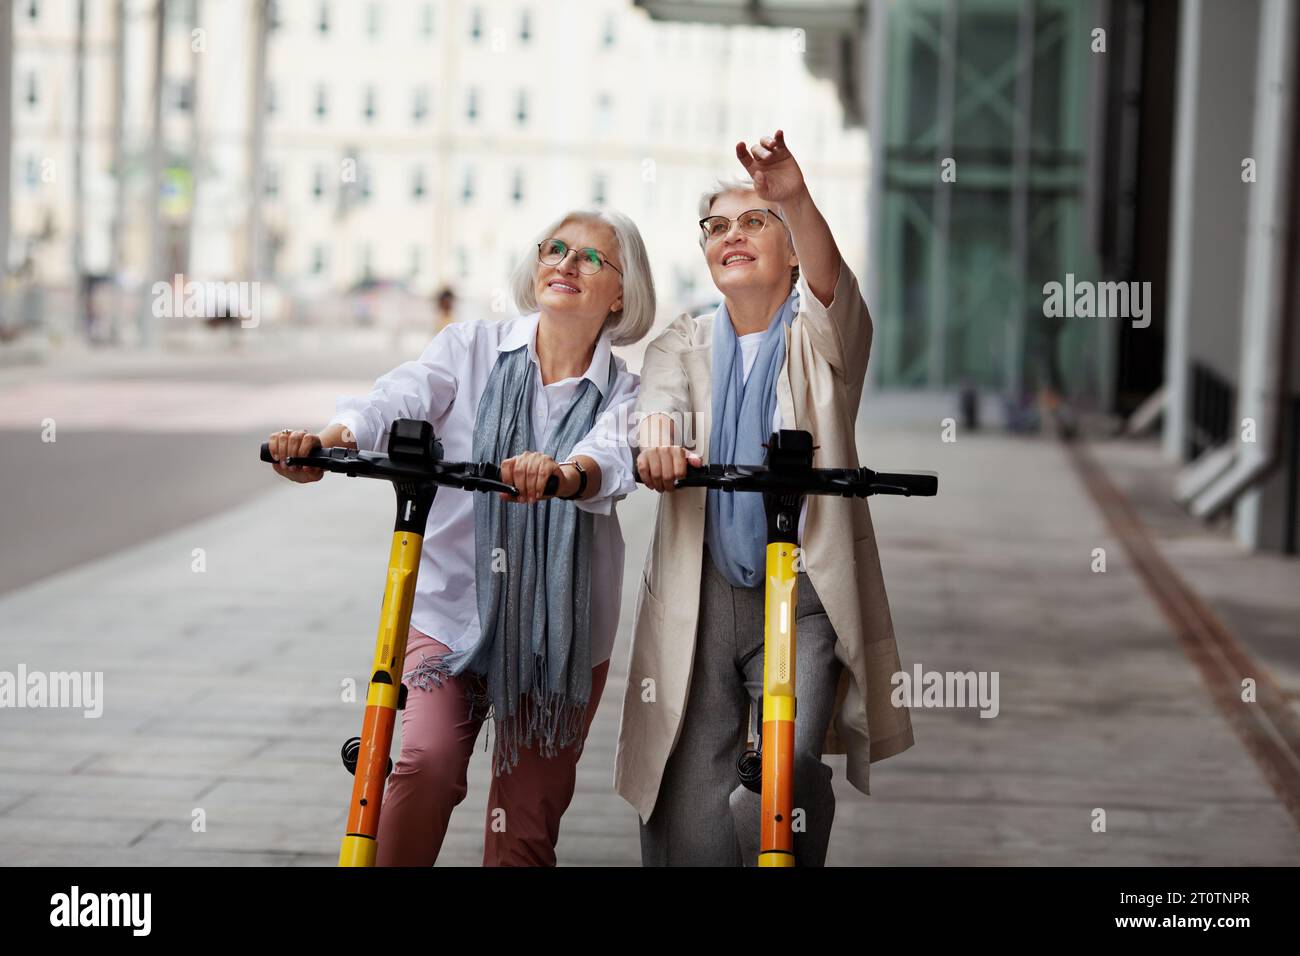 Porträt zufriedene ältere Frauen mit grauem Haar, die gemeinsam auf elektrischen Rollern im Freien fahren. Ältere Freundinnen erkunden die Stadt auf einem Ausflug, Stockfoto